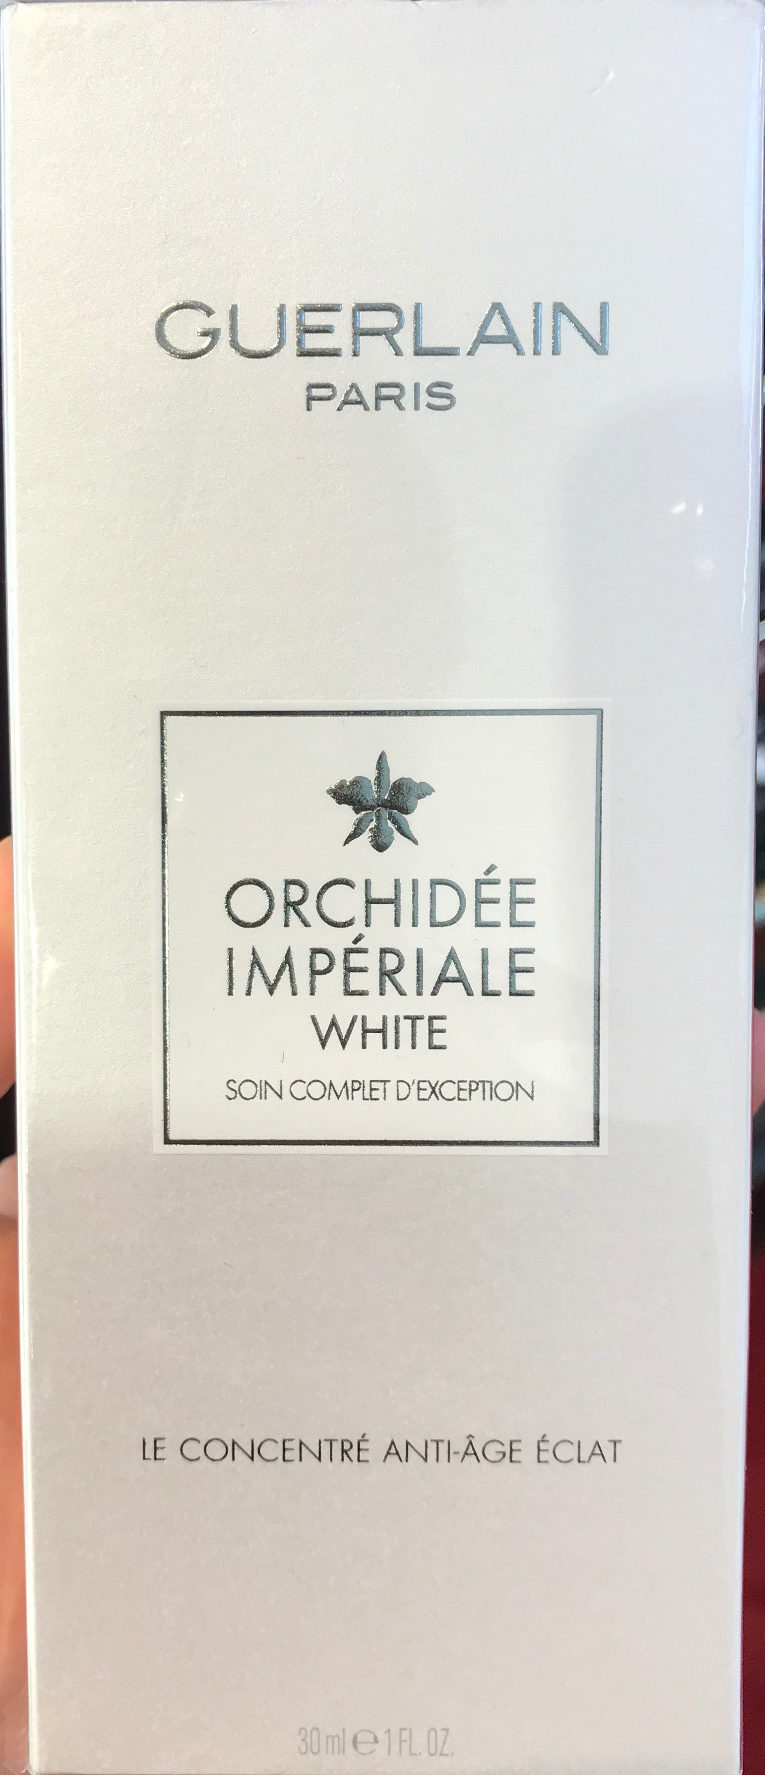 Orchidée Impériale White - Le concentré anti-âge éclat - Product - fr